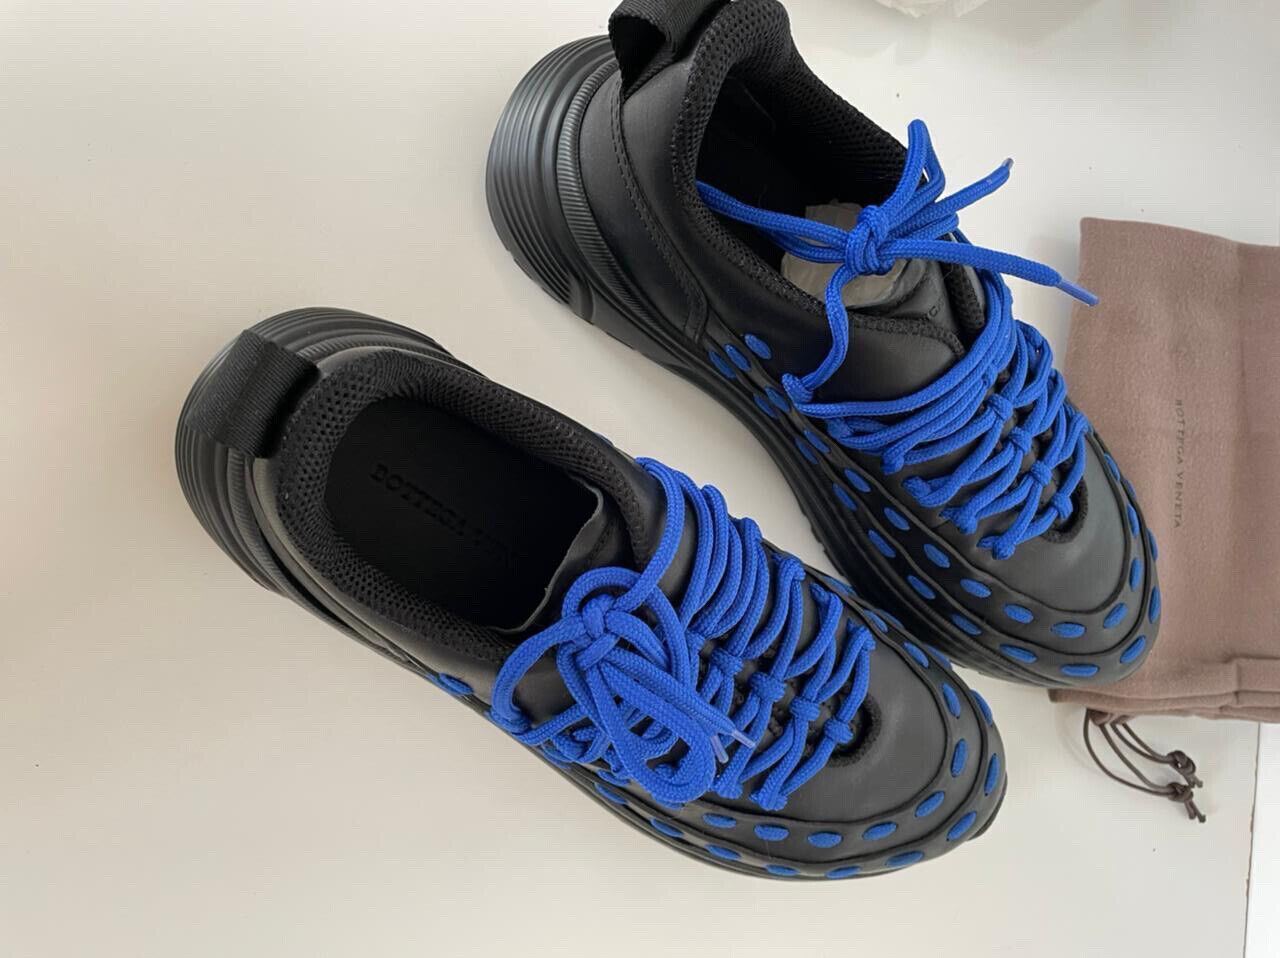 NIB 950 $ Bottega Veneta Herren-Sneaker aus Leder in Schwarz/Blau 10,5 US 578305 1014 